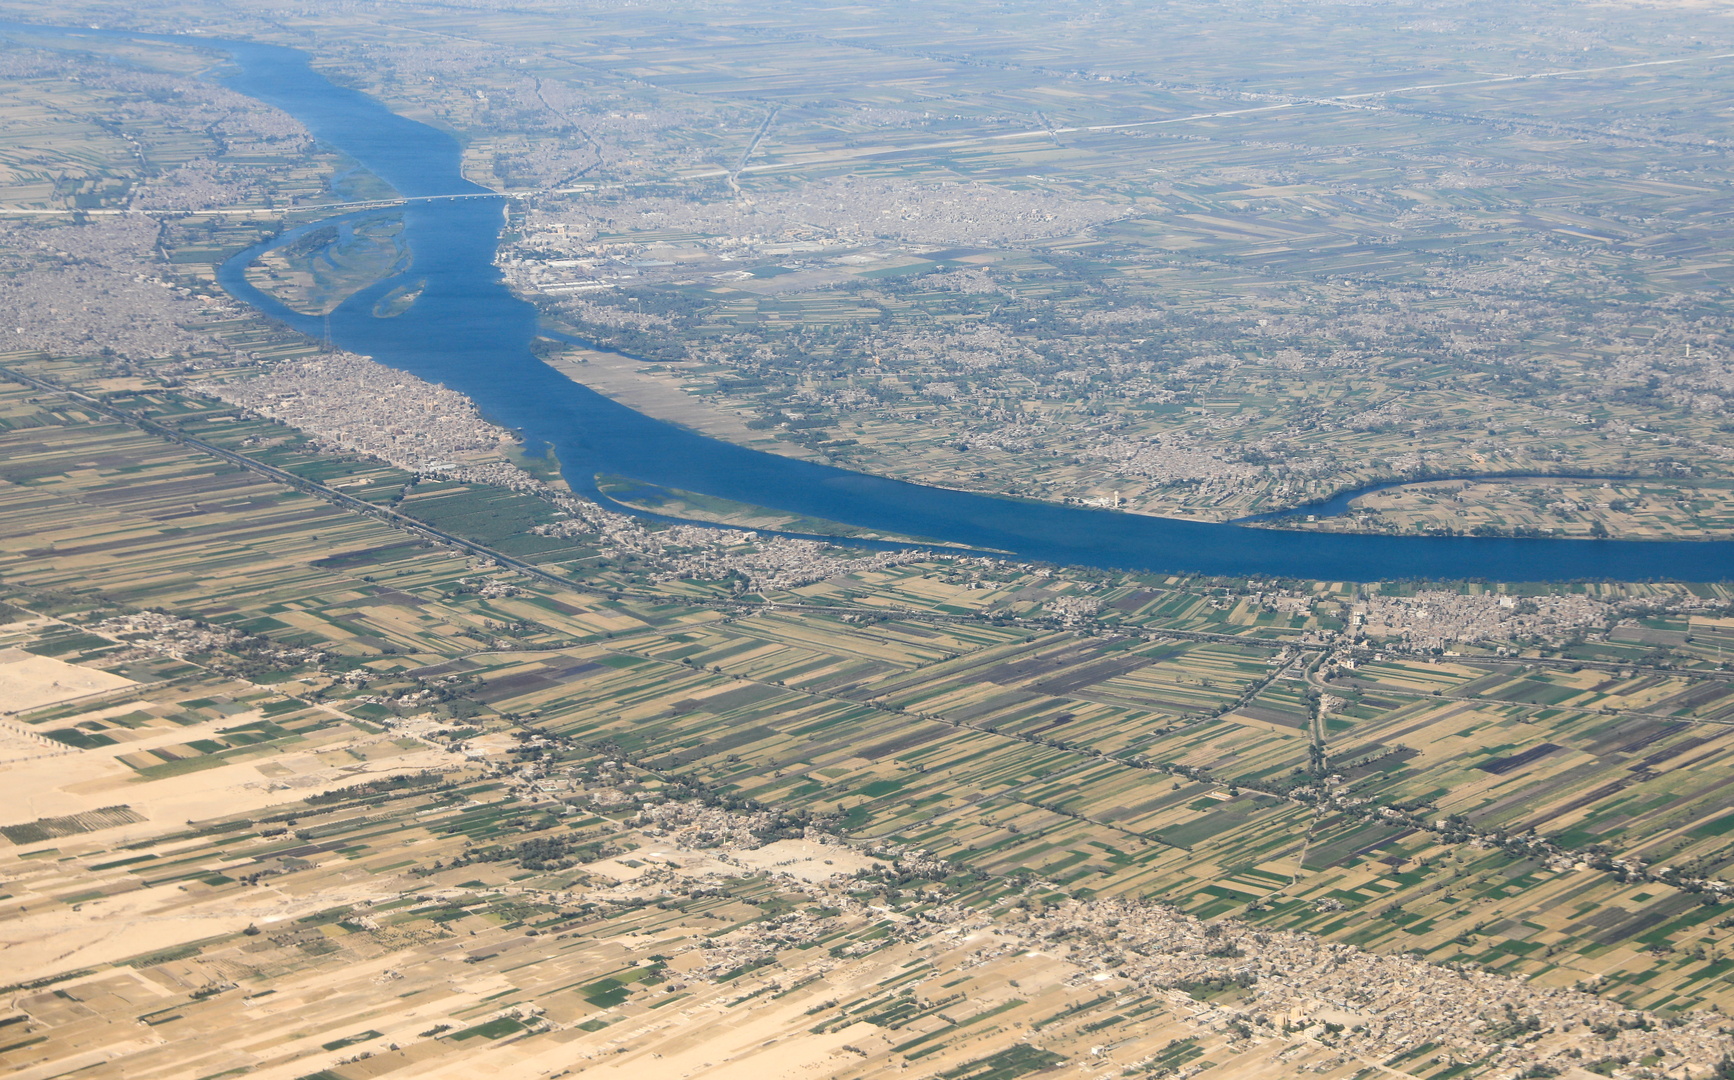 وزير الري المصري يحذر من المخاطر الجسيمة في أي نقص بالموارد المائية الواردة إلى البلاد